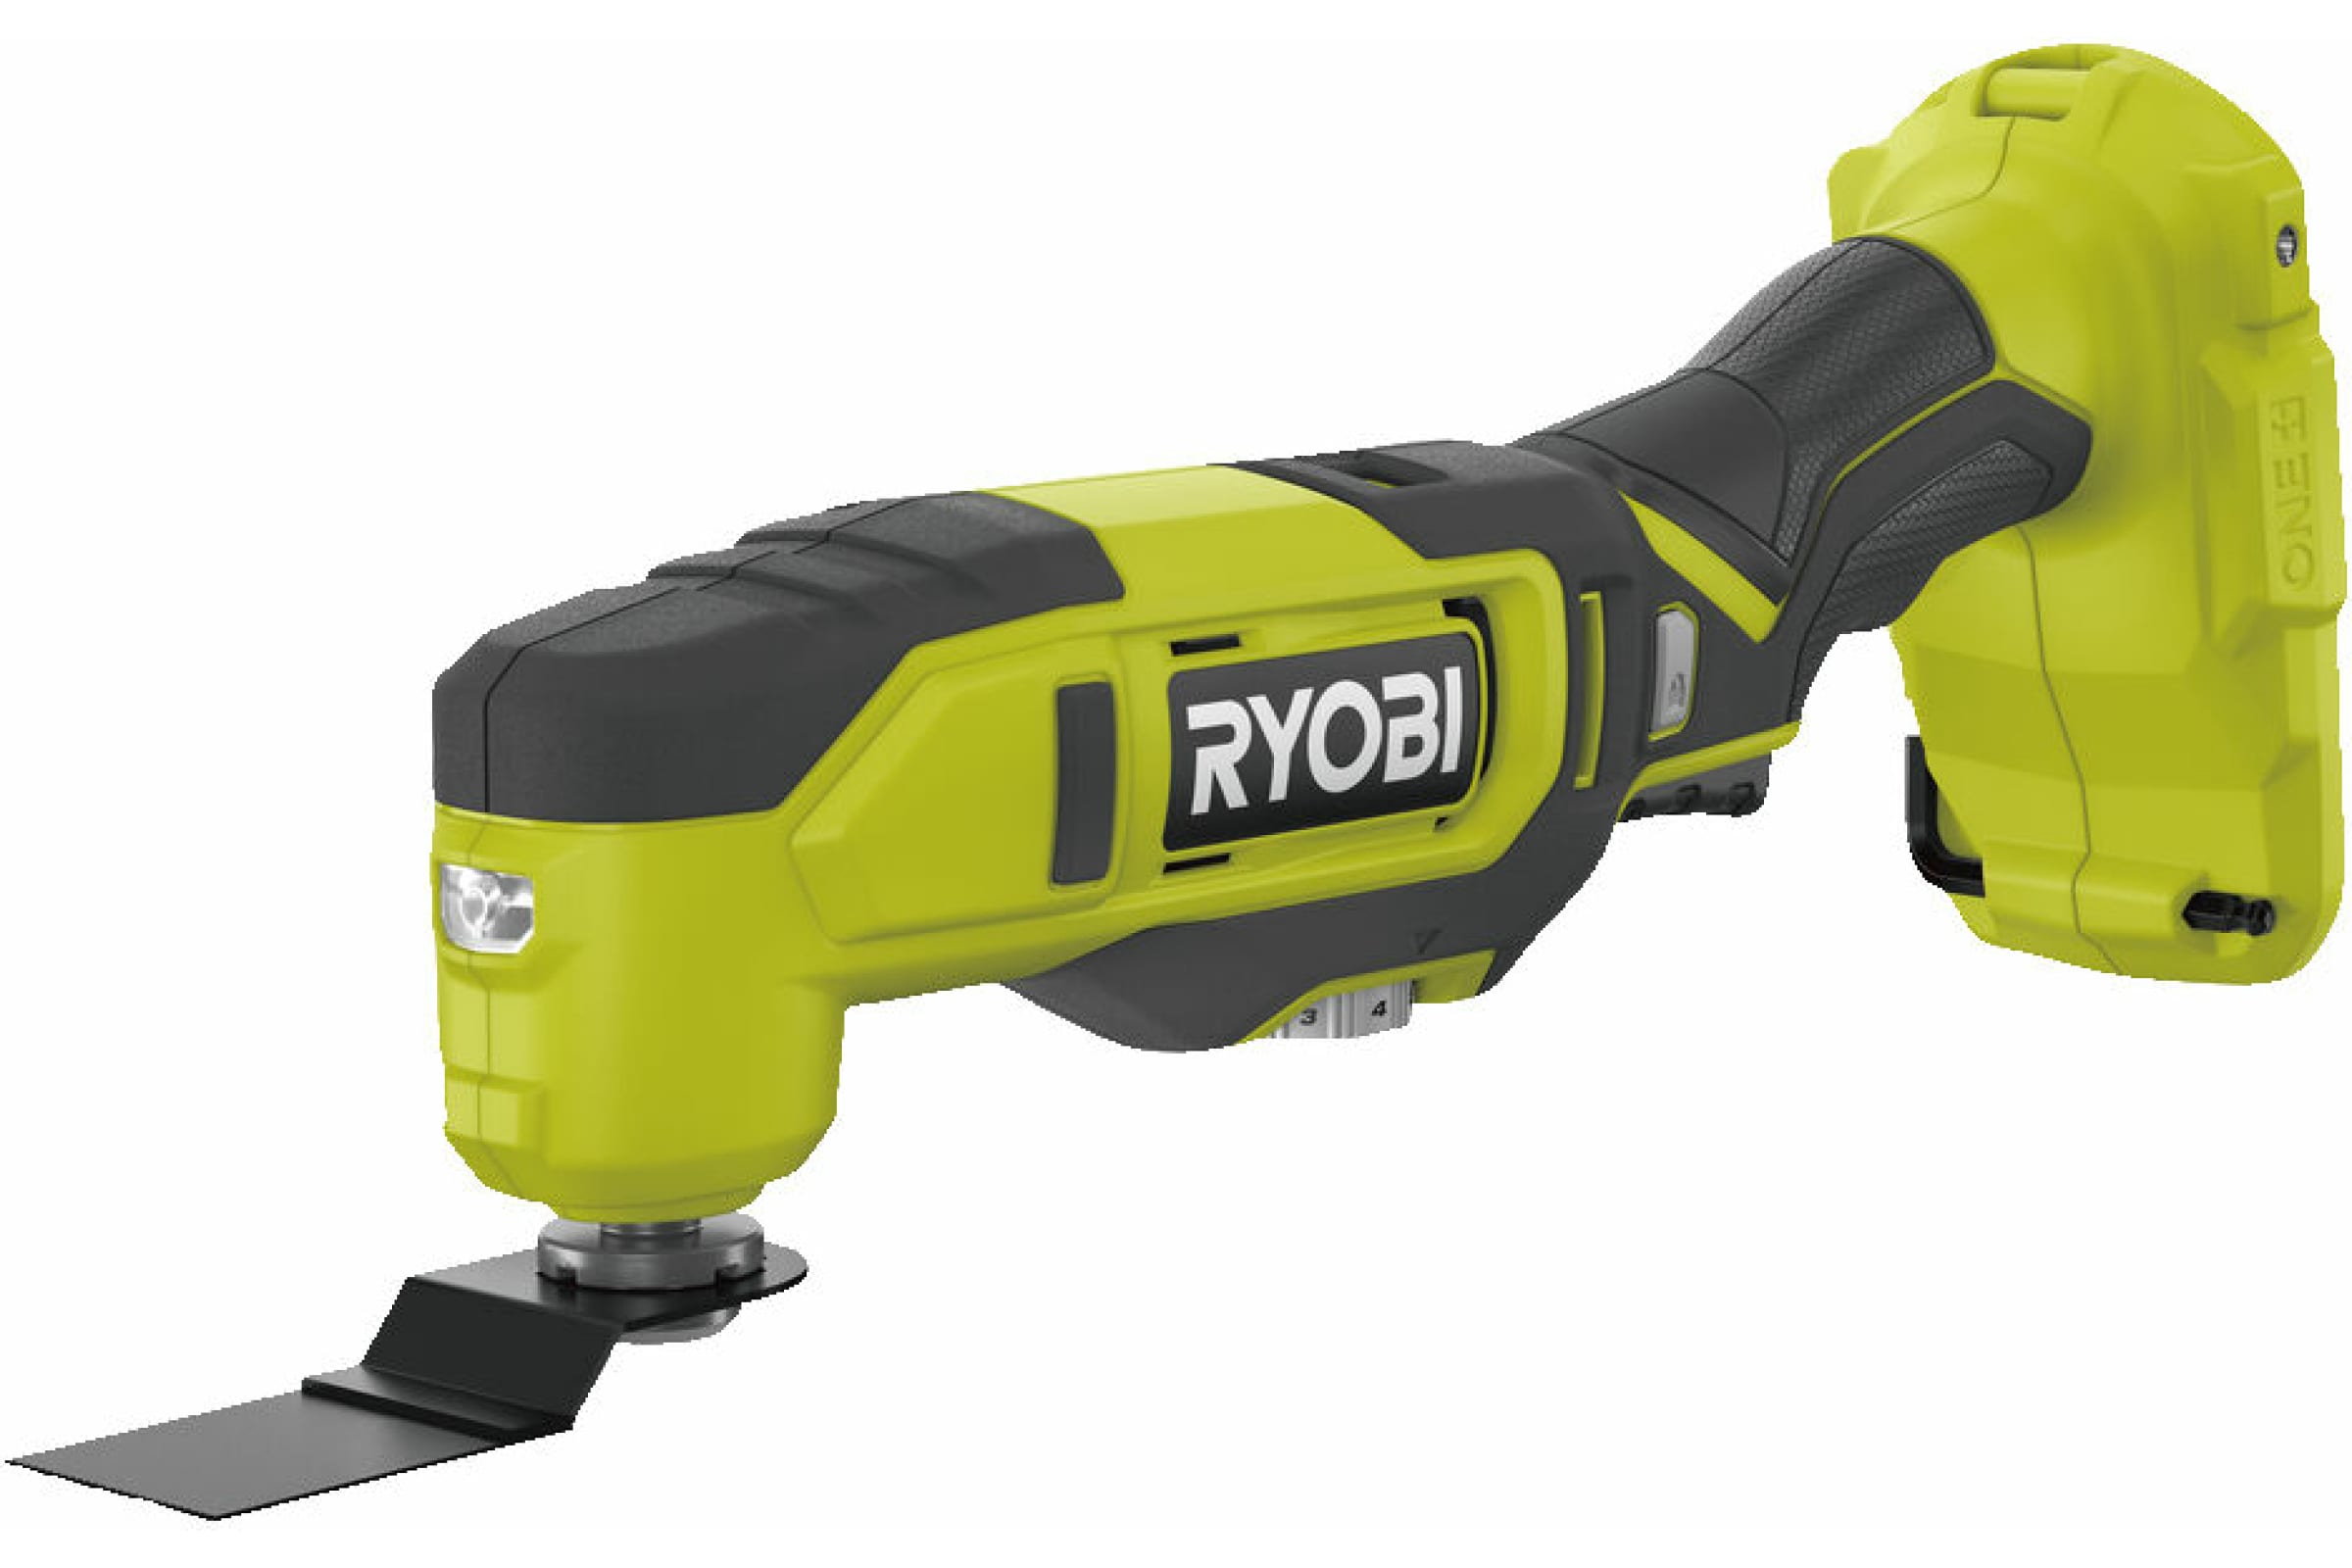 Ryobi 18В Многофункциональный инструмент RMT18-0 5133005346 эспандер ленточный многофункциональный 2 15 кг 208 х 1 3 х 0 5 см цвет зеленый